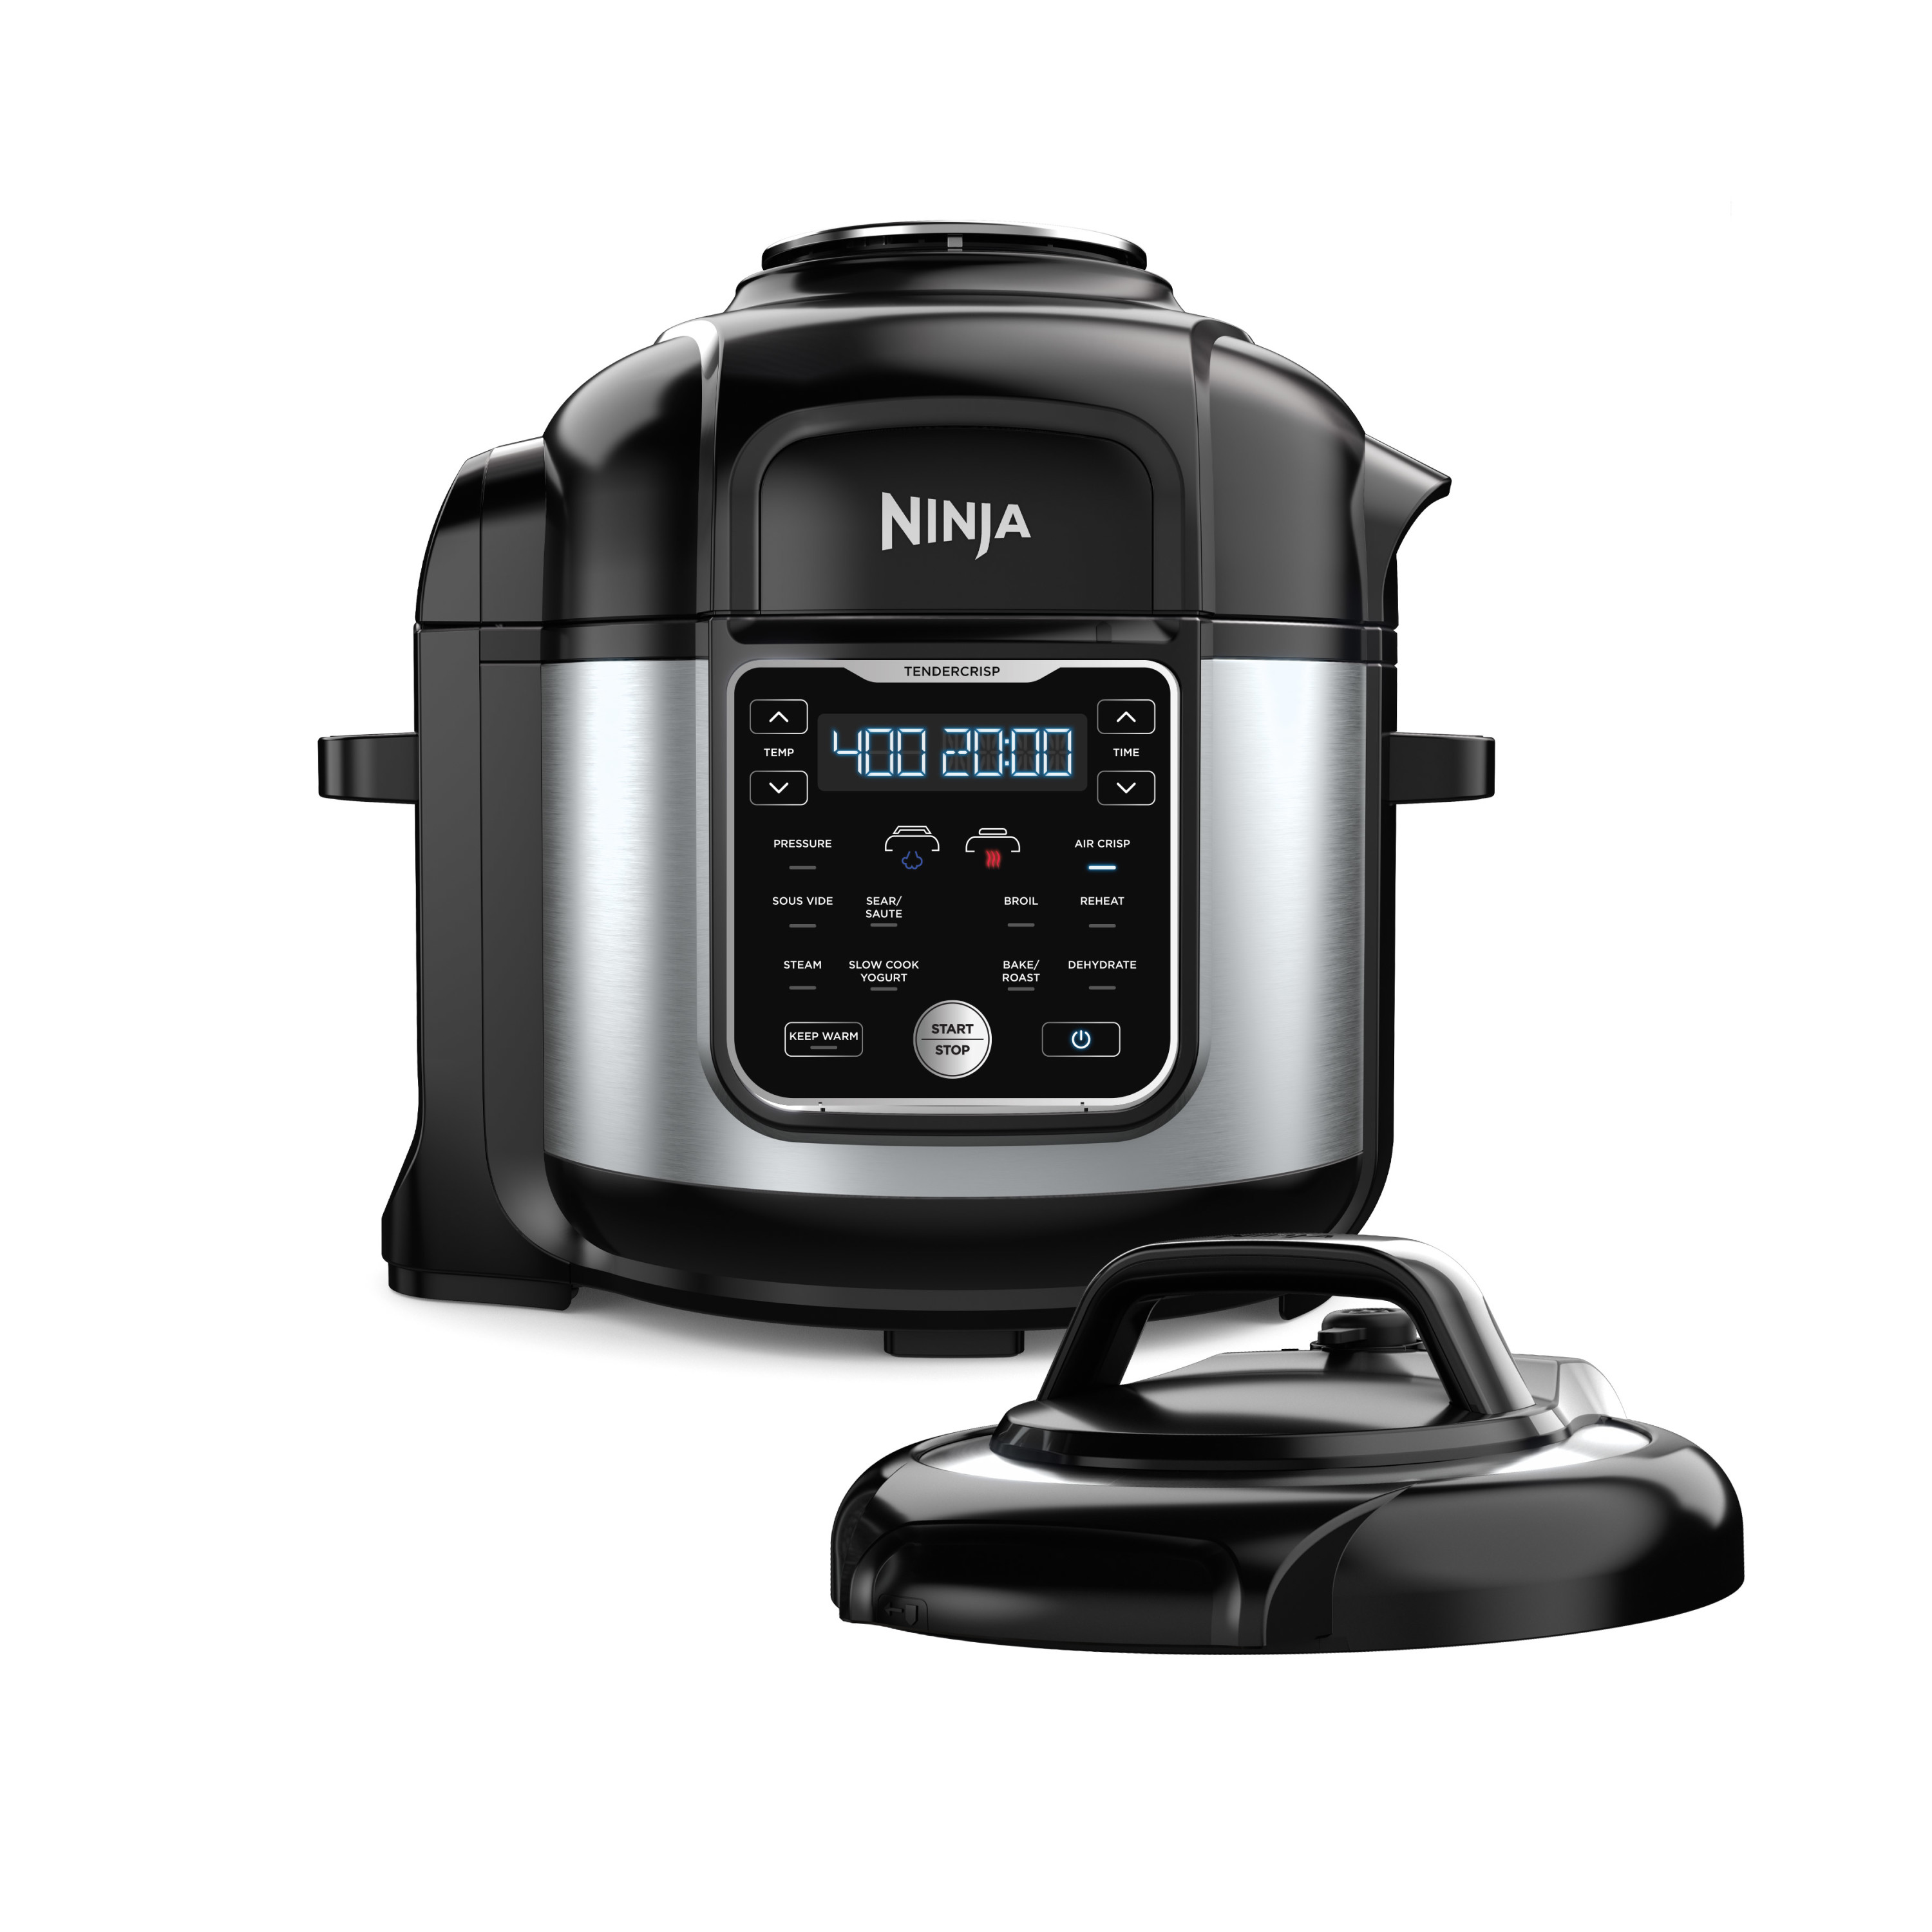 Ninja Foodi 10-in-1, 8 Quart XL Pressure Cooker Air Fryer Multicooker, OS401 - image 1 of 9